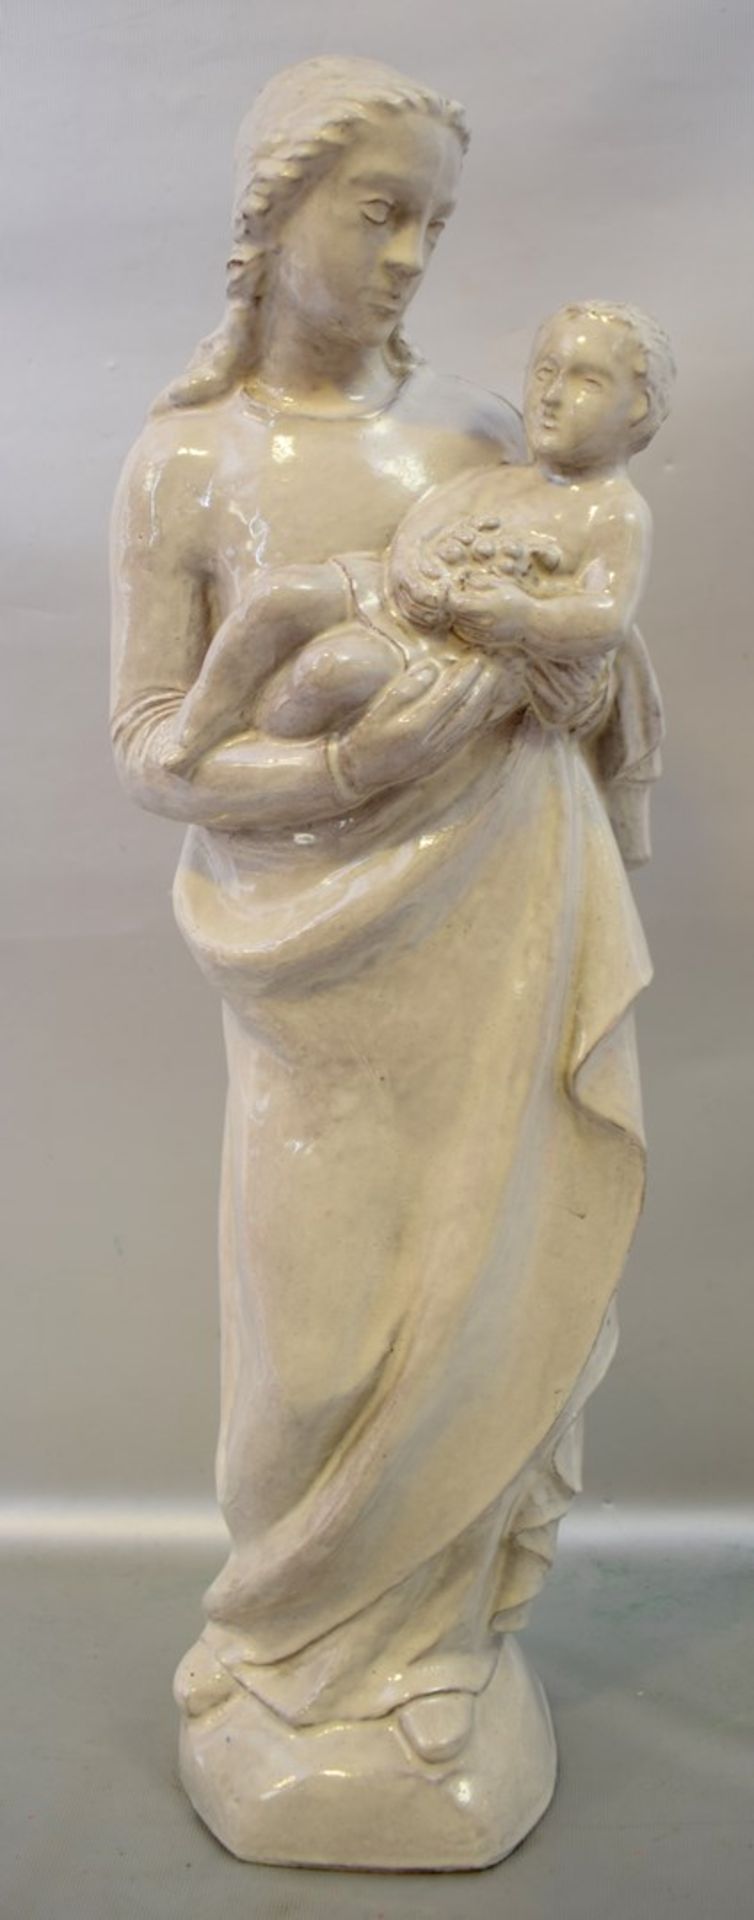 Mutter Gottes mit Kindauf Sockel stehend, beigefarben glasiert, H 52 cm, 19. Jh.